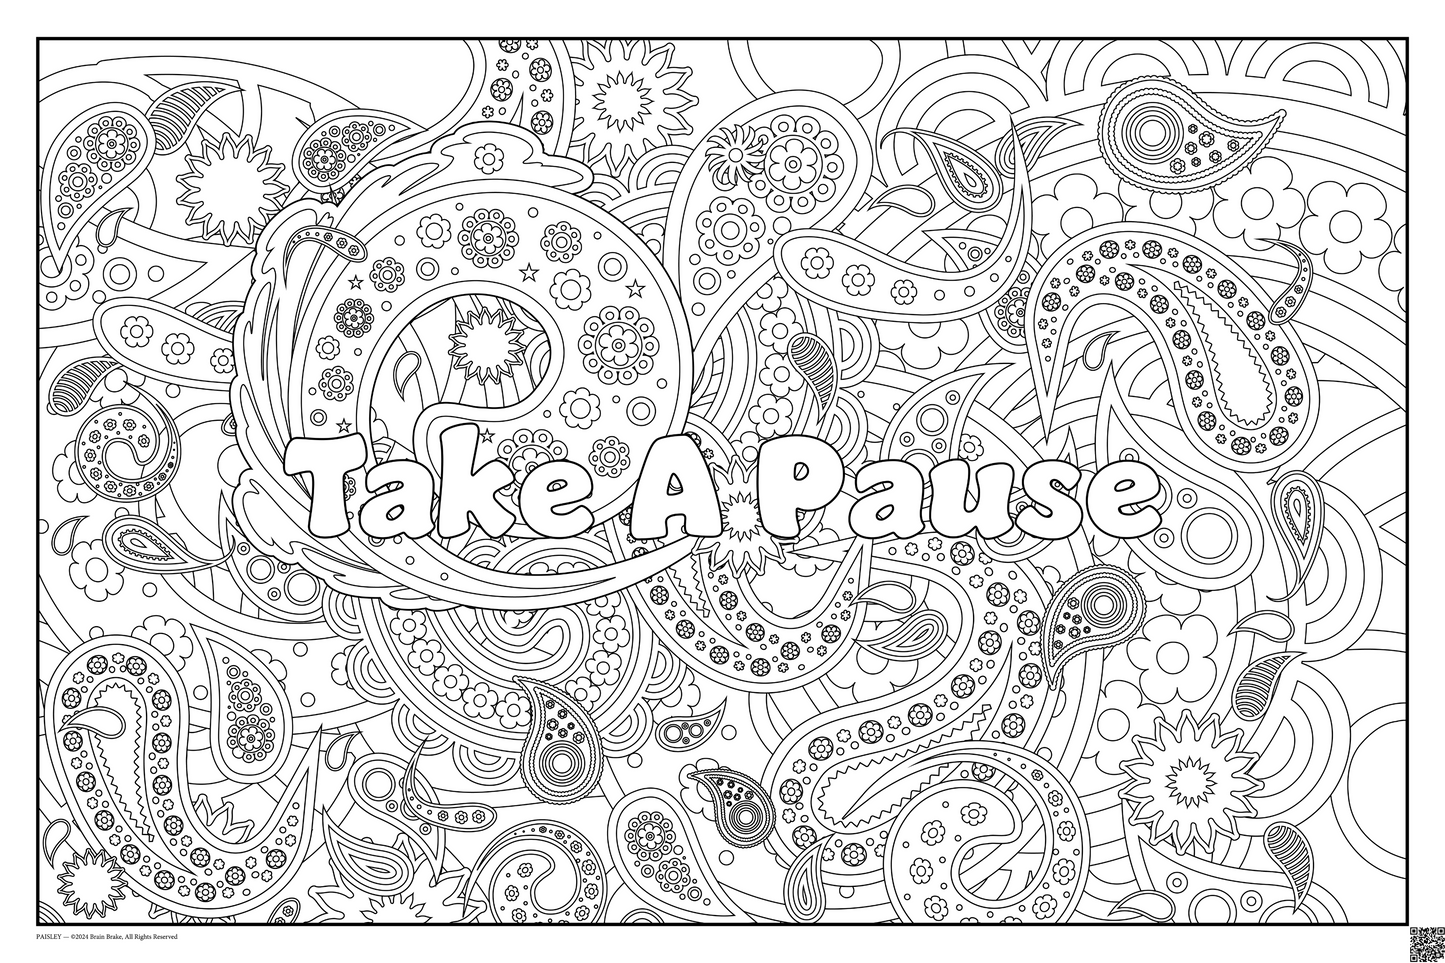 Calming Corner: Take A Pause